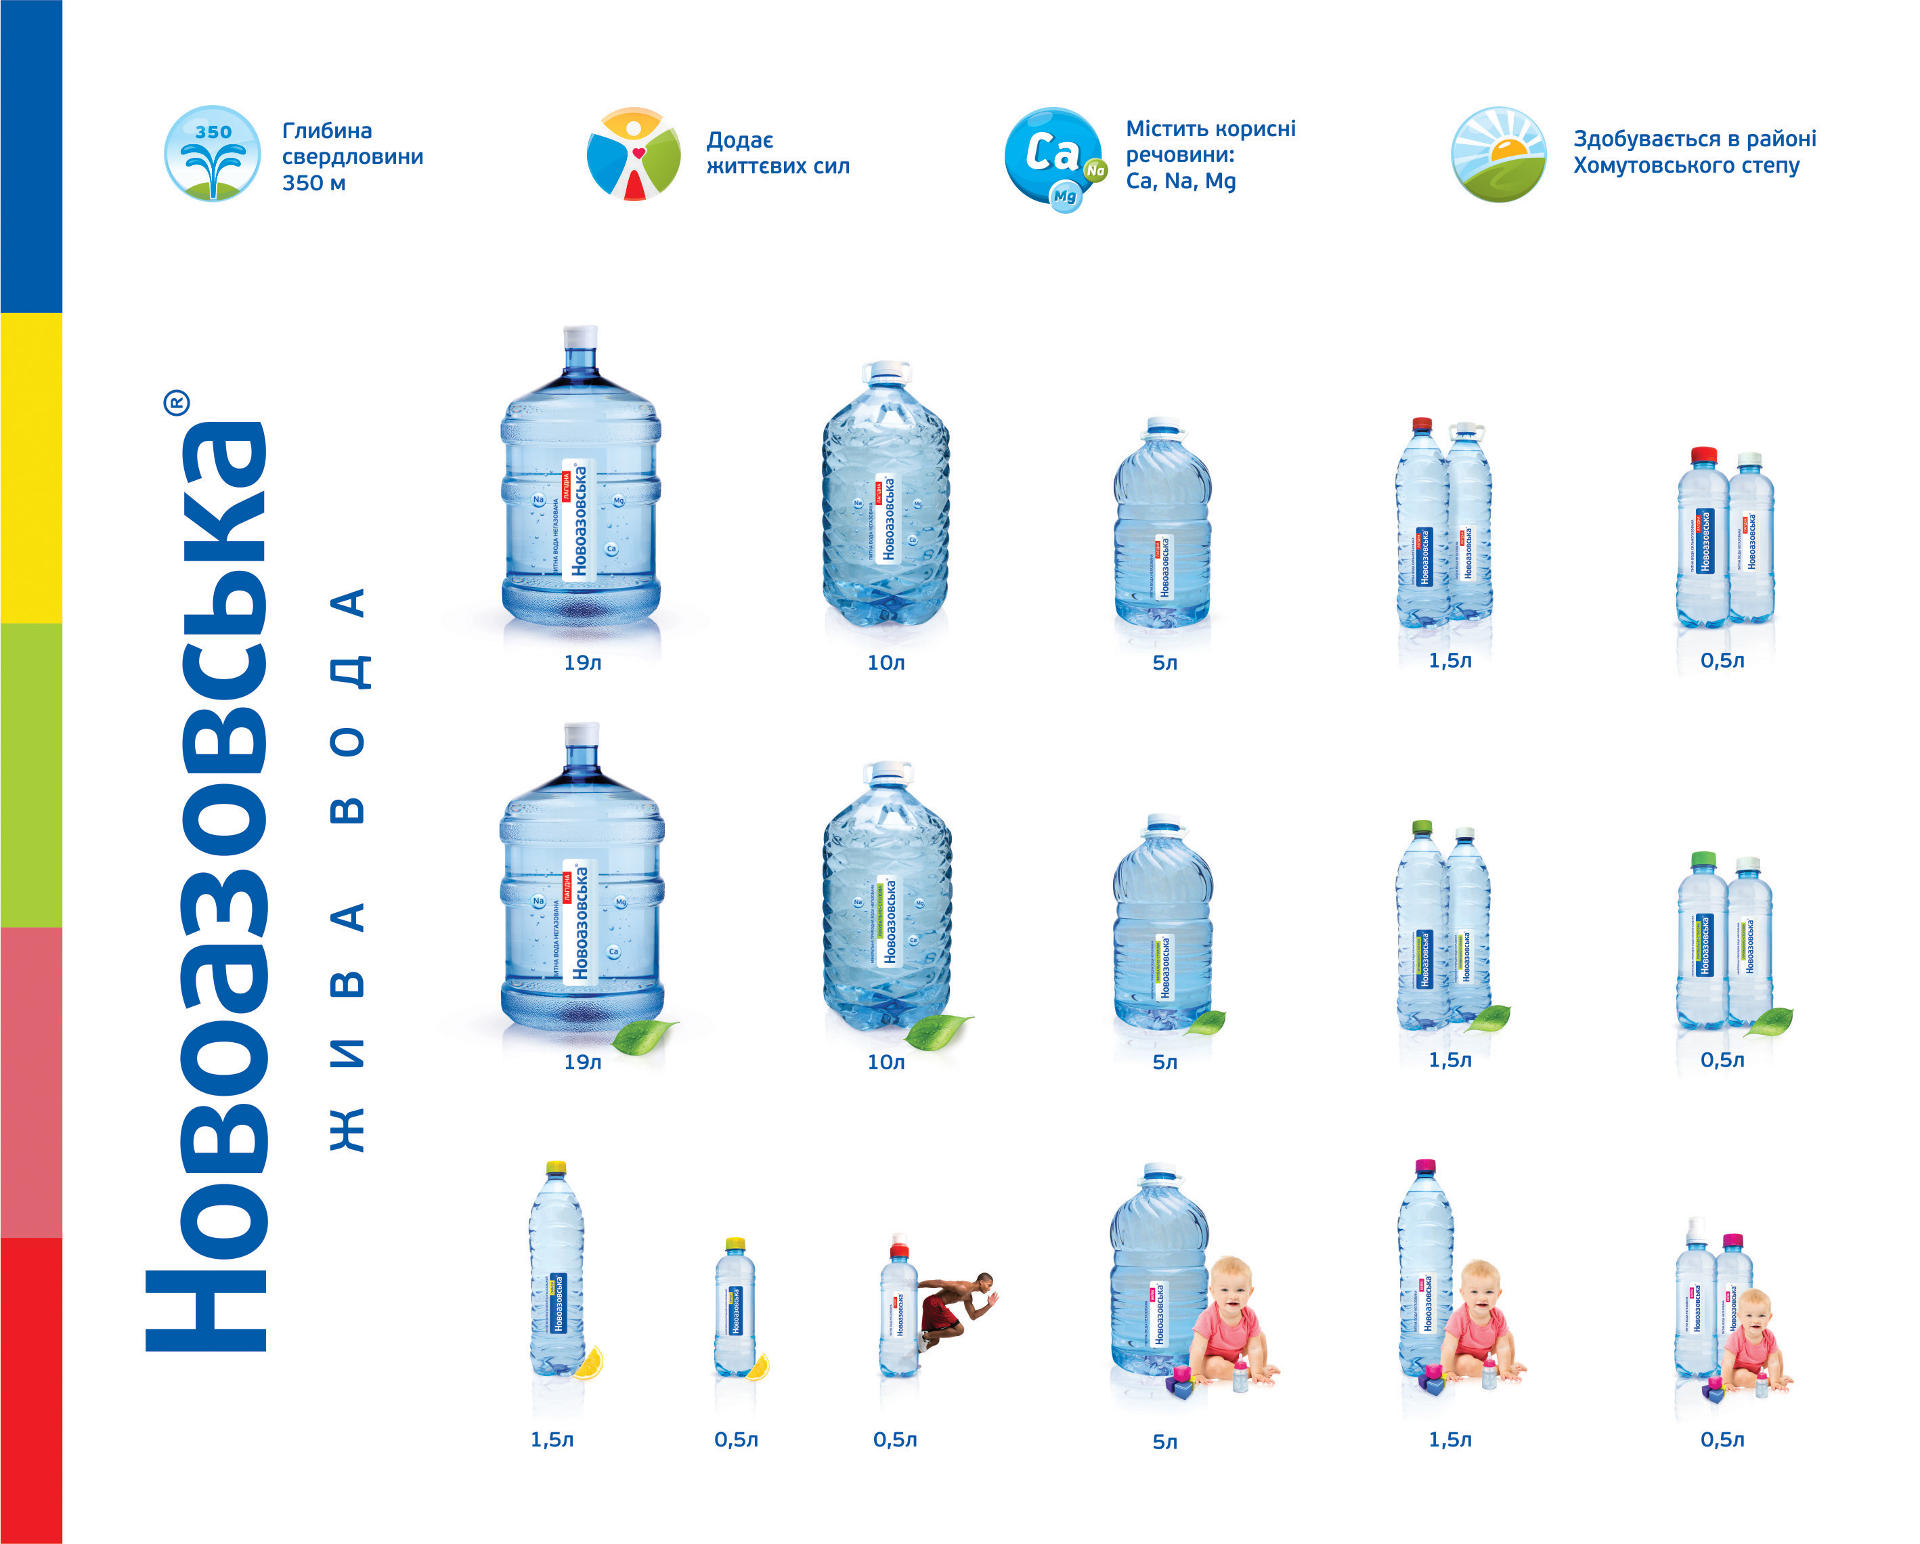 Создание этикетки для воды, Water label design